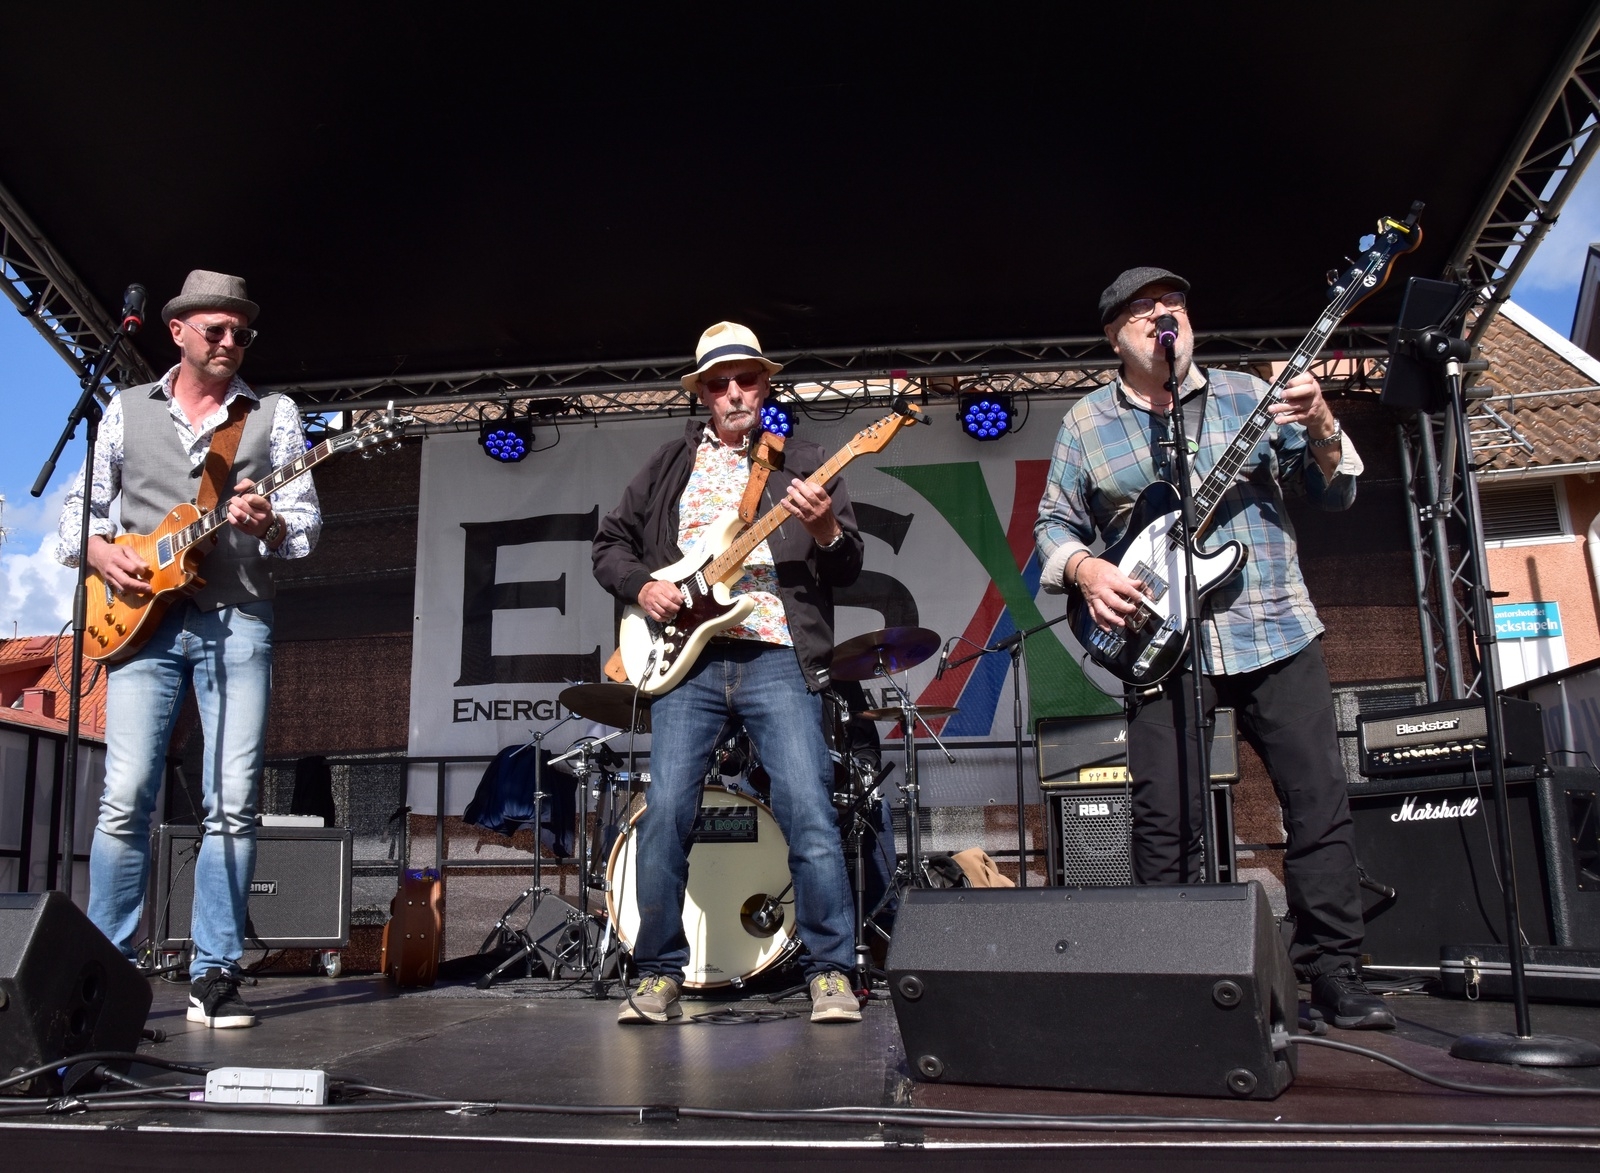 Bandet "Rårört" var bland de första att inleda Blues festivalen.